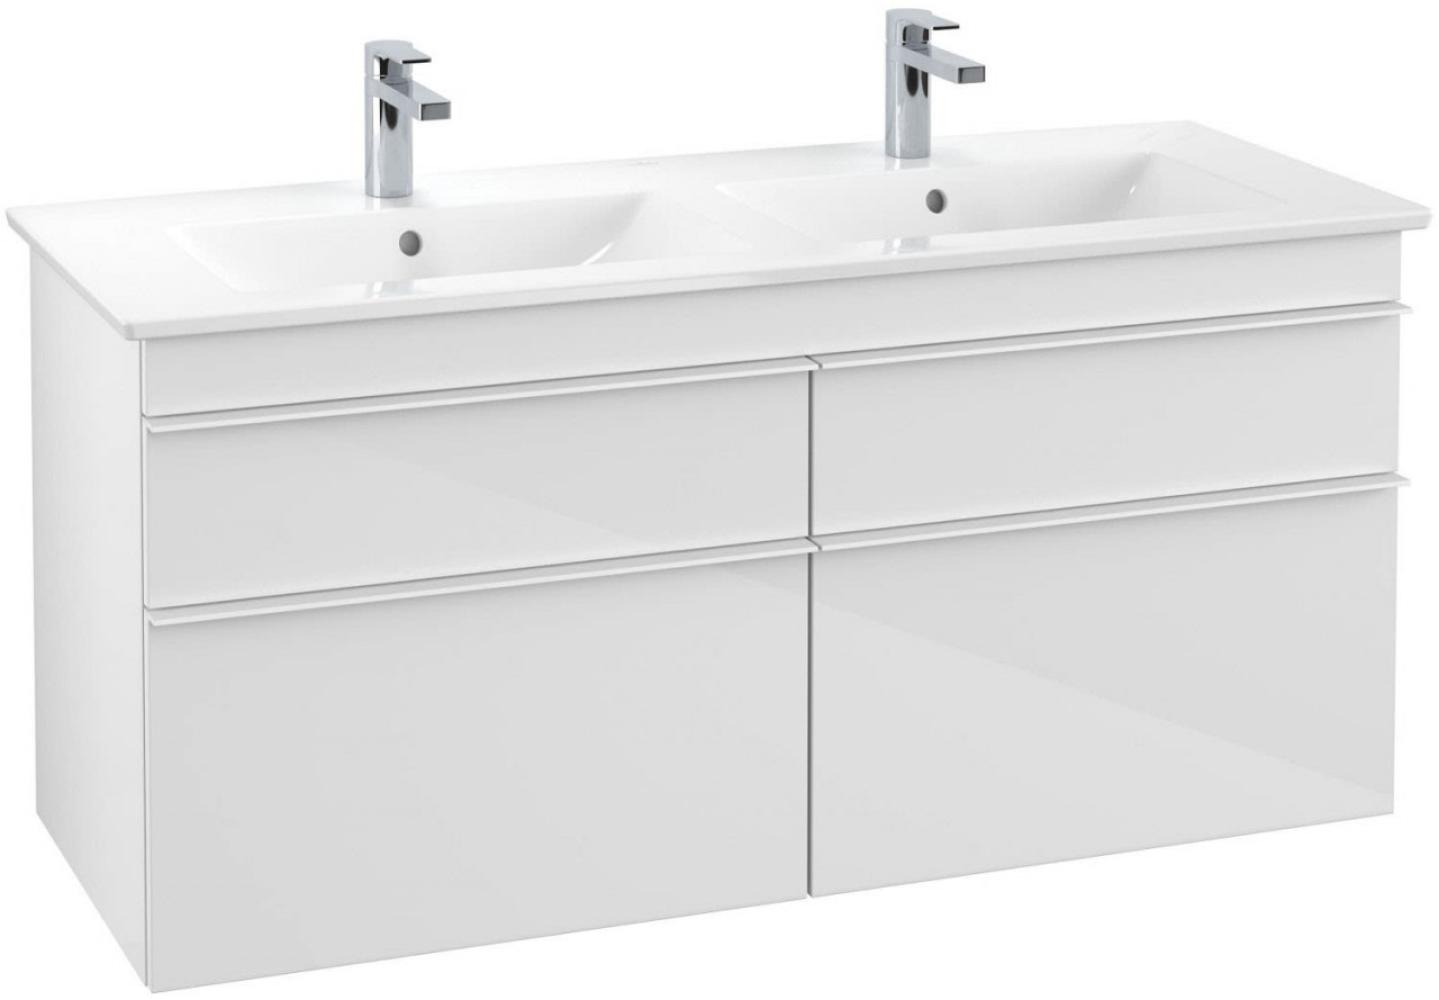 Villeroy & Boch VENTICELLO Waschtischunterschrank 125 cm breit, Weiß, Griff Weiß Bild 1